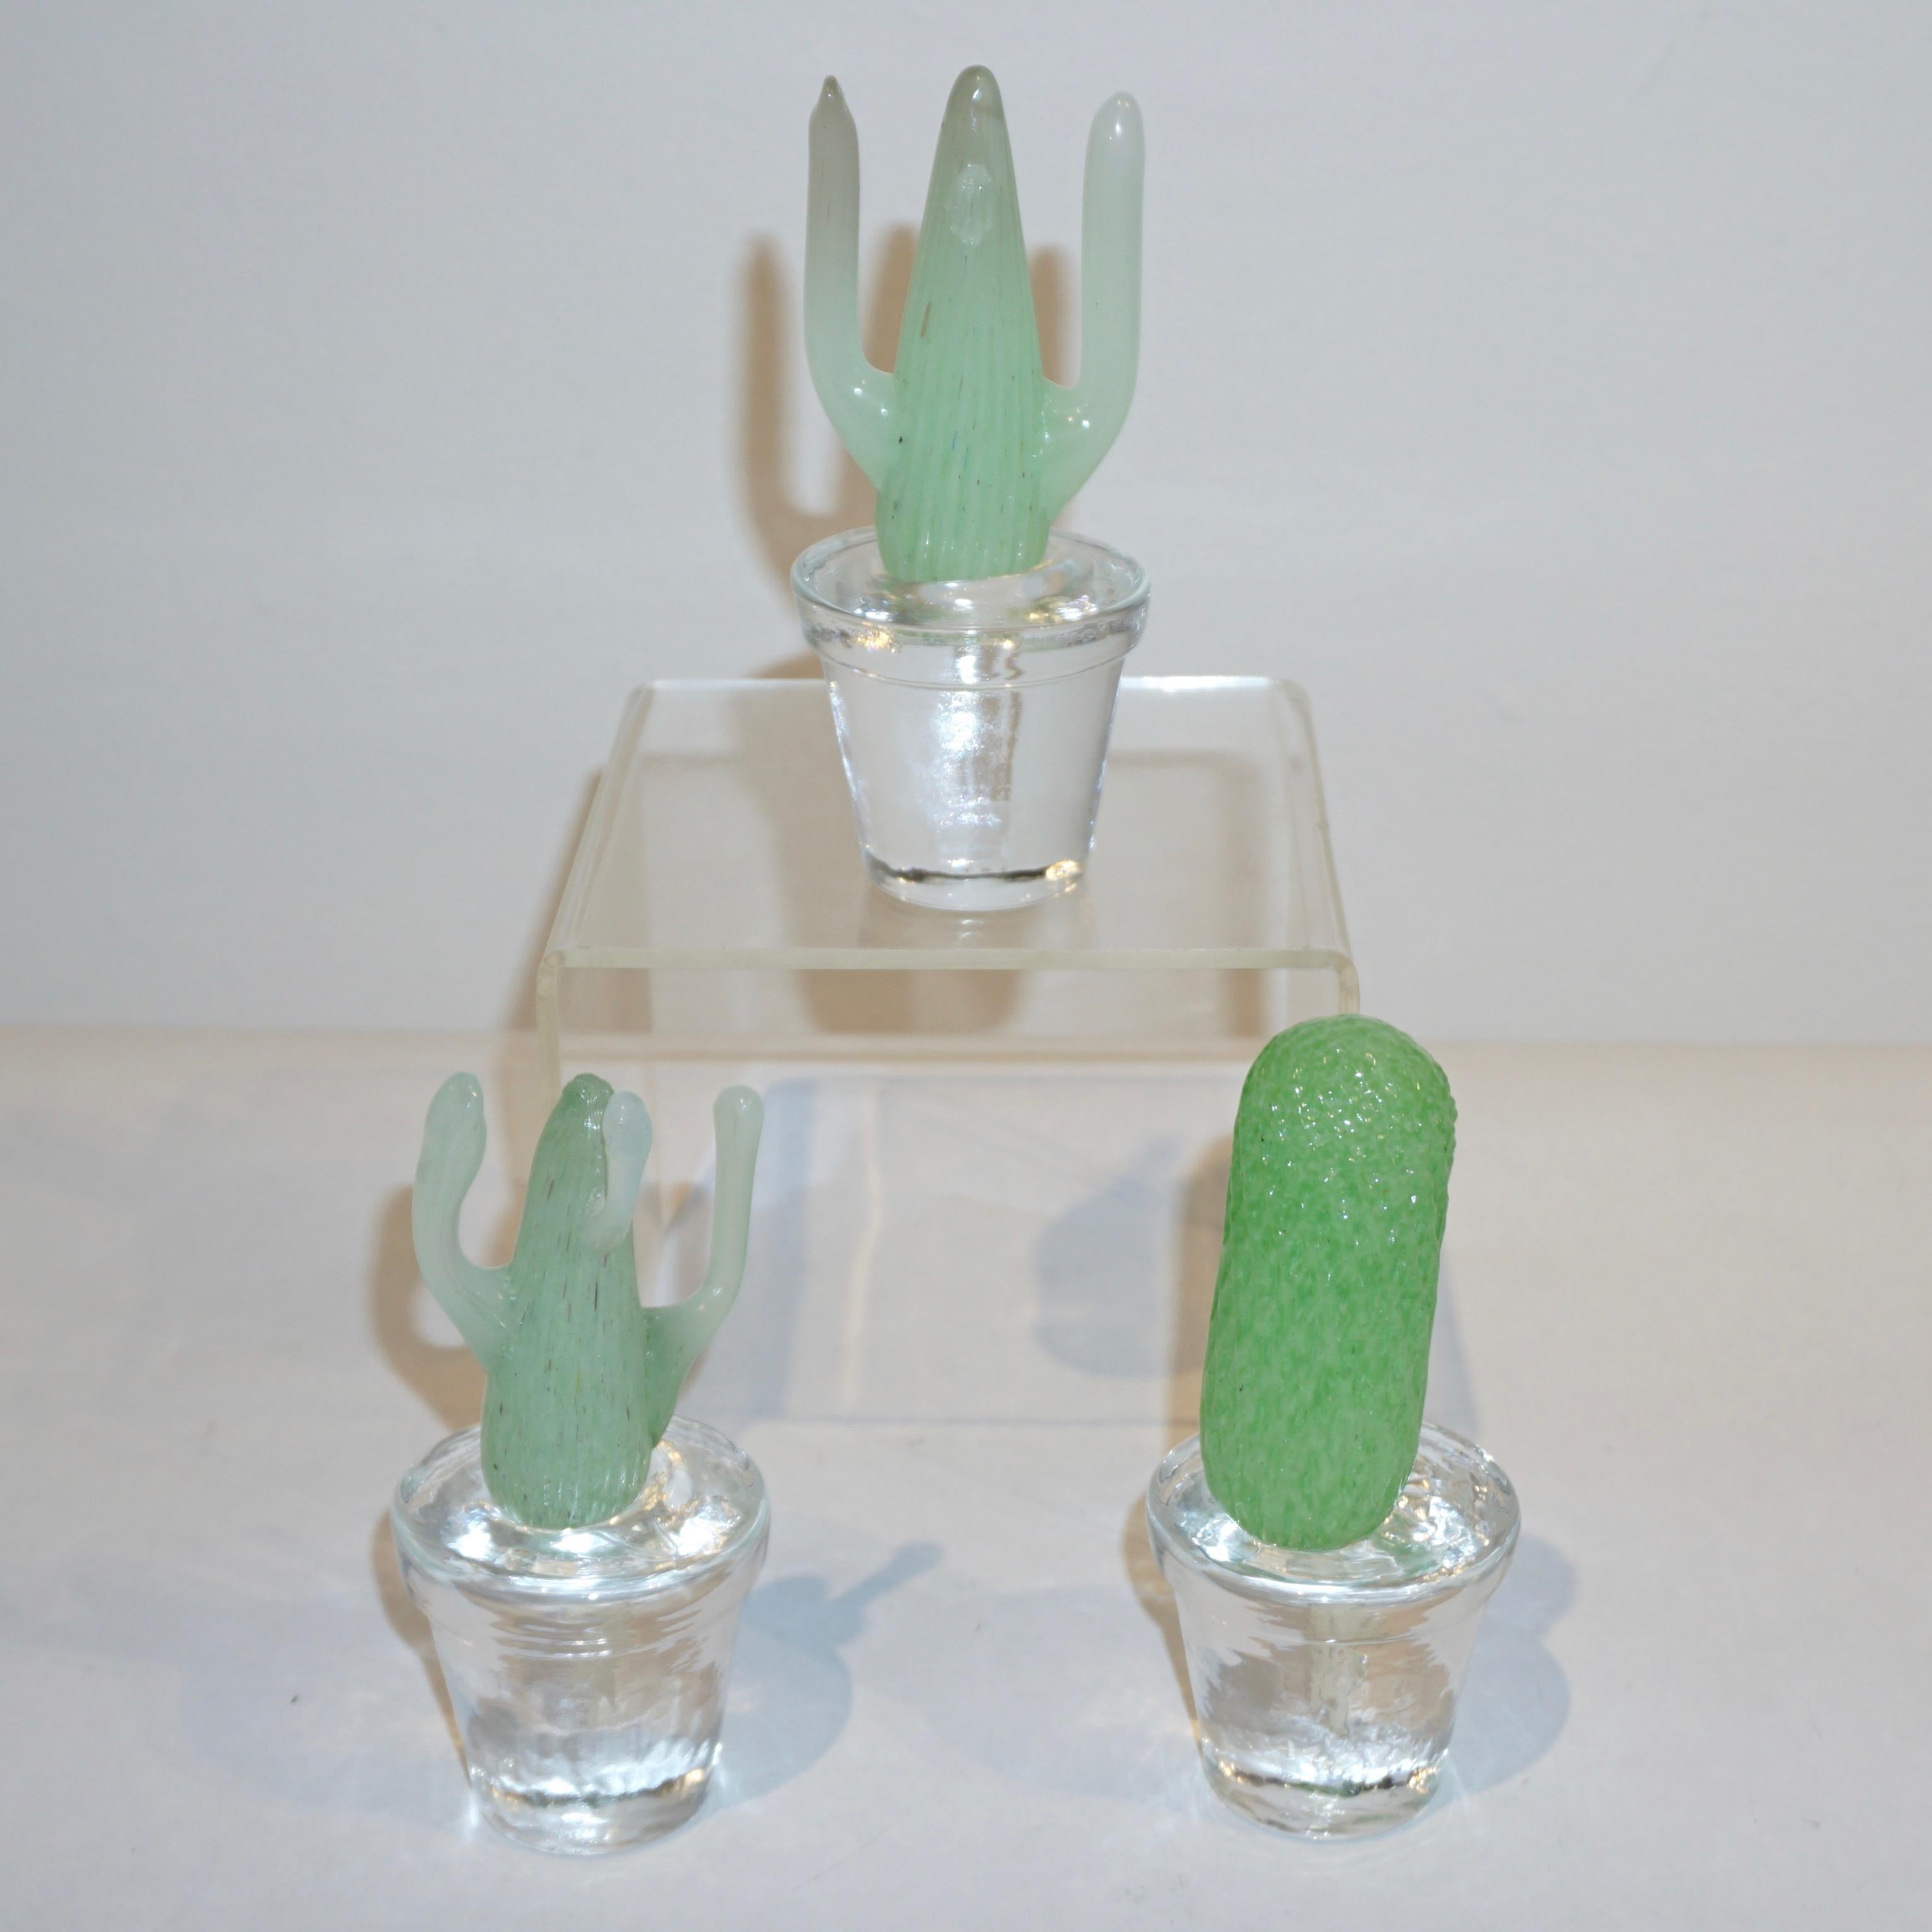 Italienische minimalistische Miniatur-Sammelpflanzen in limitierter Auflage, Modernes Design von Marta Marzotto, realisiert von Formia, 3 verschiedene lebensechte organische Formen in grüner smaragdgrüner und heller erbsengrüner Farbe, gepflanzt in